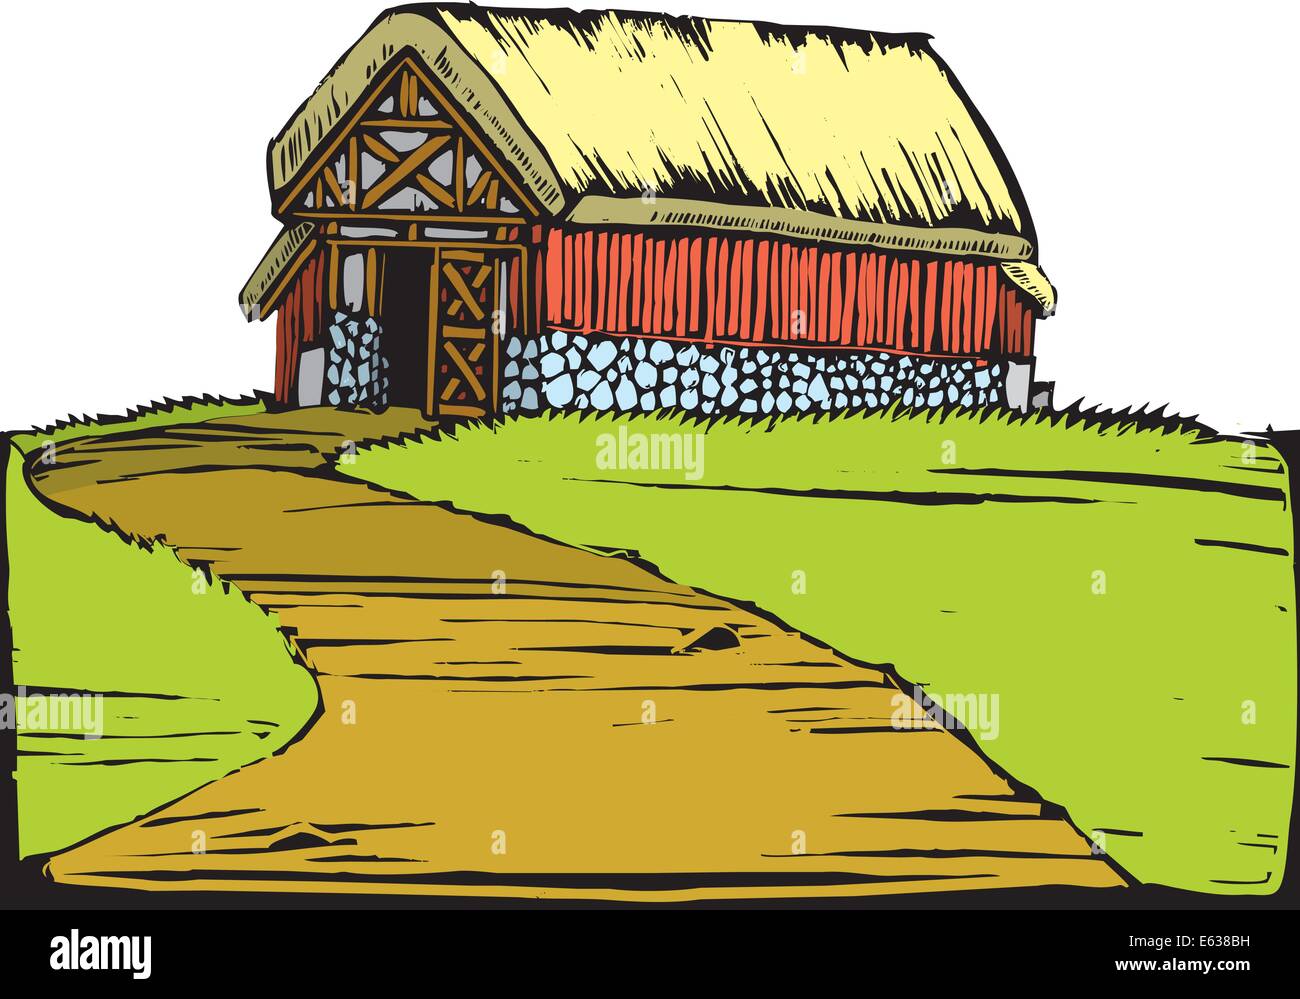 Notizbrett Bild einer roten Scheune mit einem Rasen-Dach sitzt auf einem Hügel. Stock Vektor